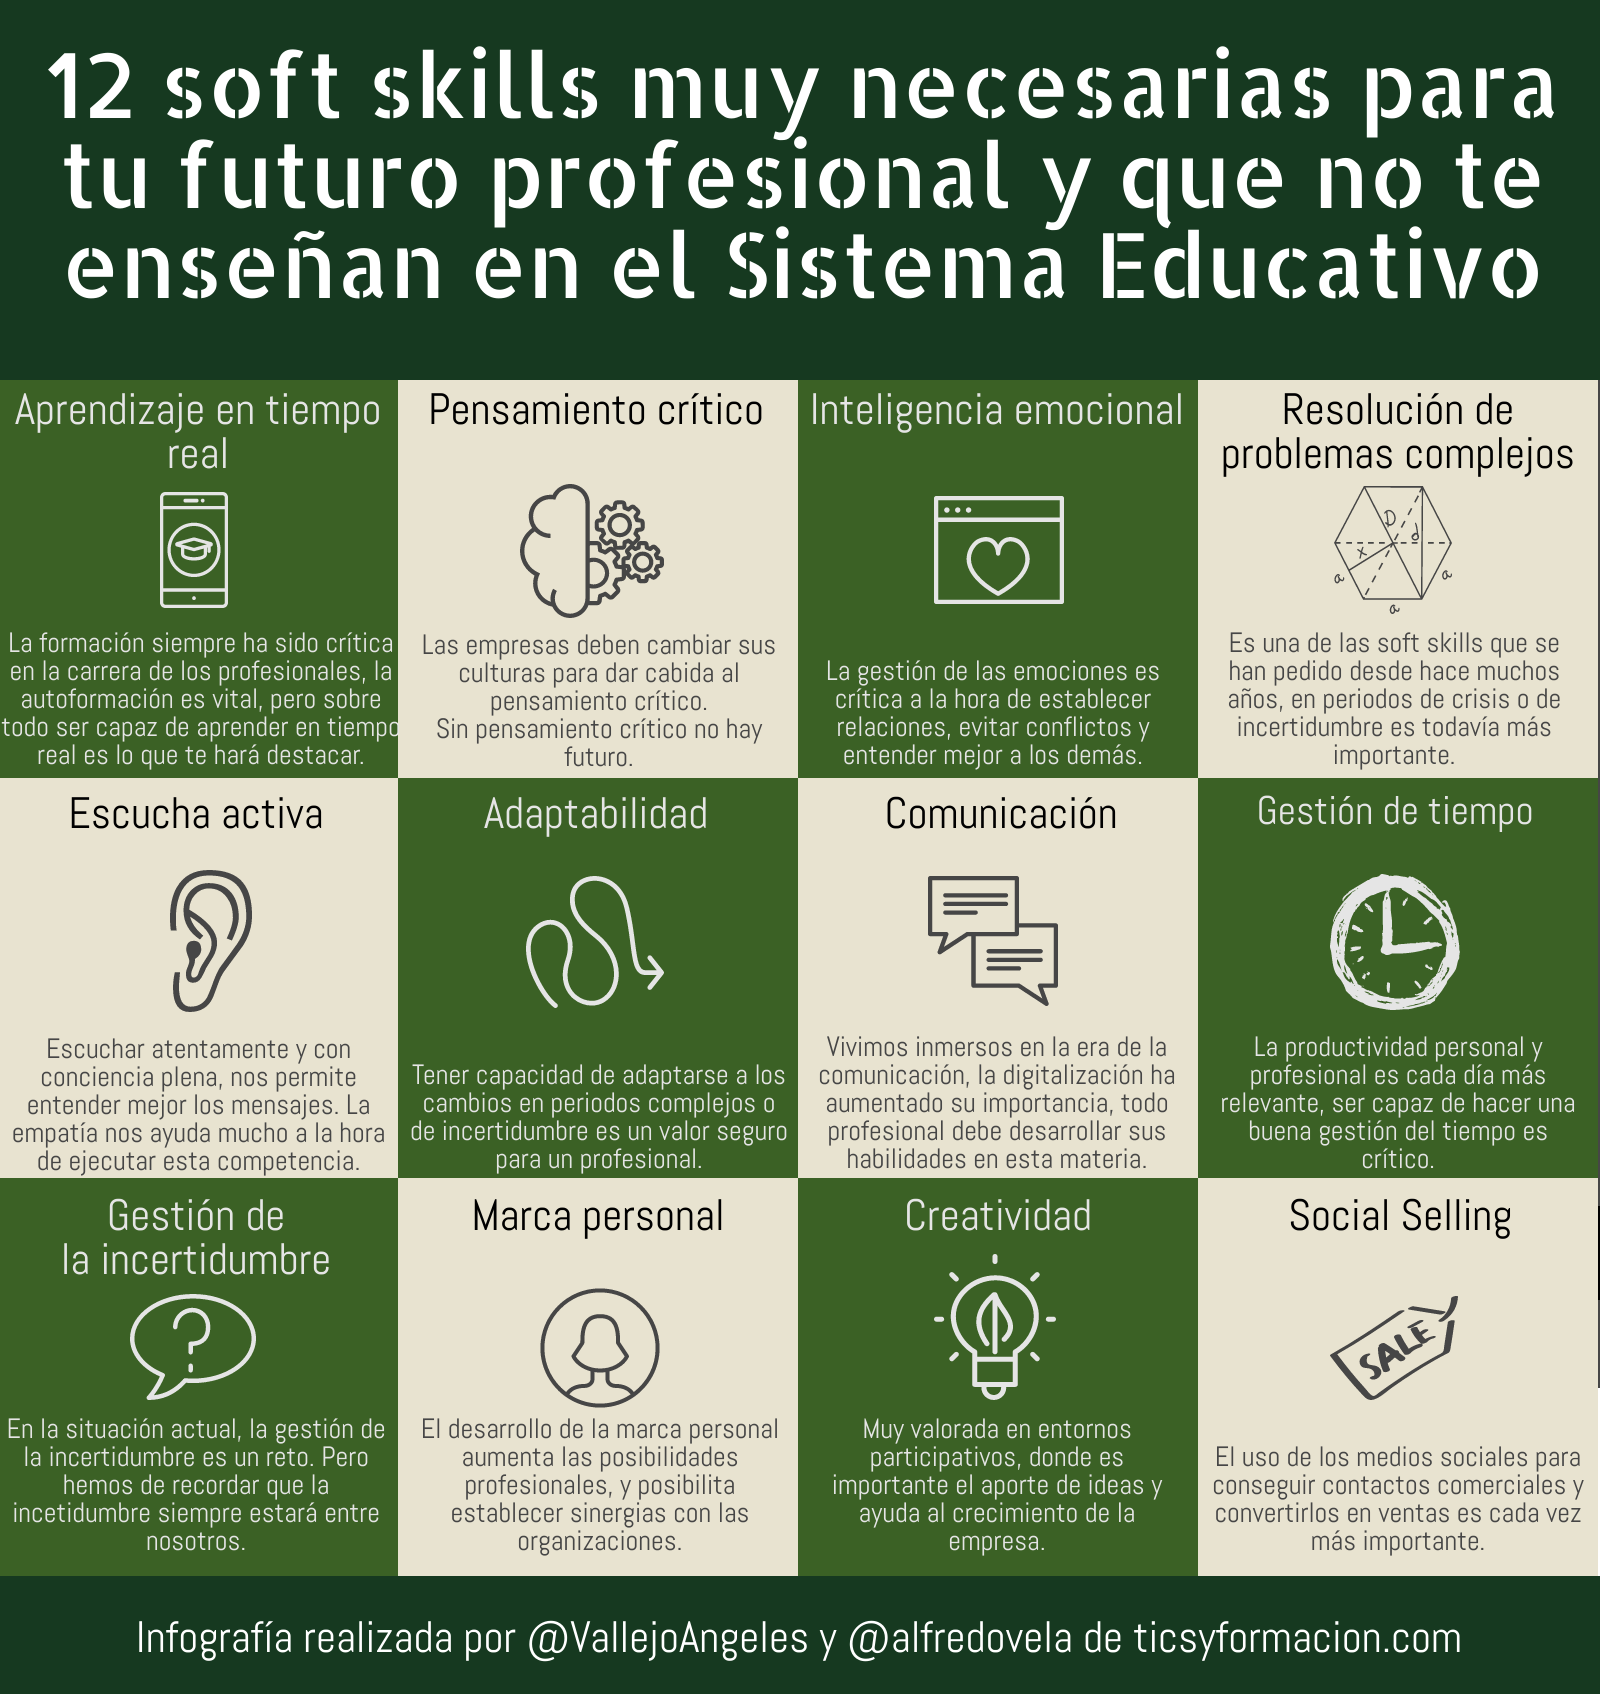 12 soft skills muy necesarias para tu futuro profesional y que no te enseñan en el Sistema Educativo #infografia #rrhh #talento